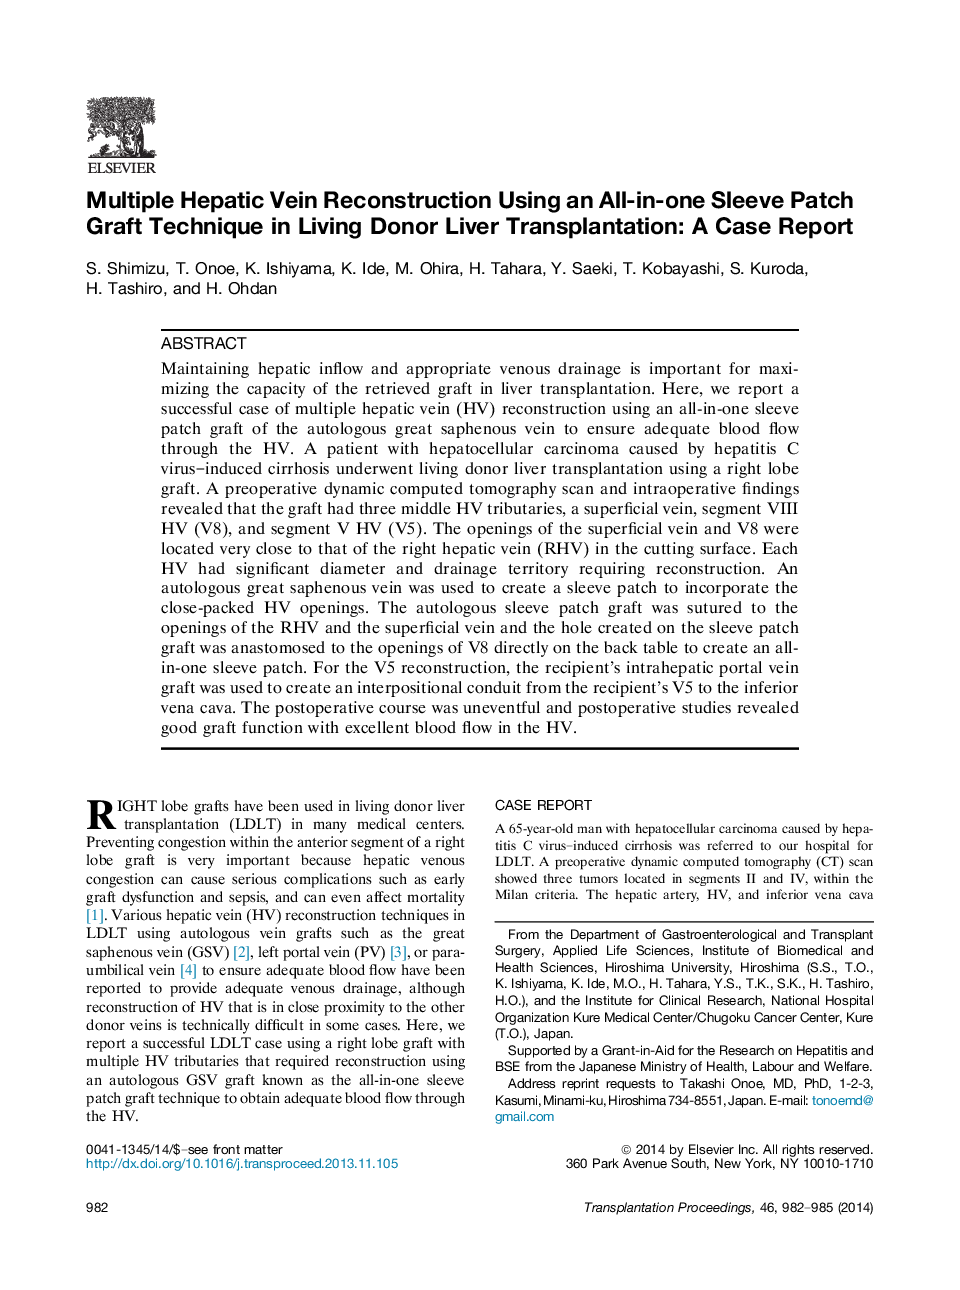 بازسازی ورید کبدی چندگانه با استفاده از تکنیک انتقال کامل آستین در پیوند کبد دونر زندگی: یک گزارش مورد 